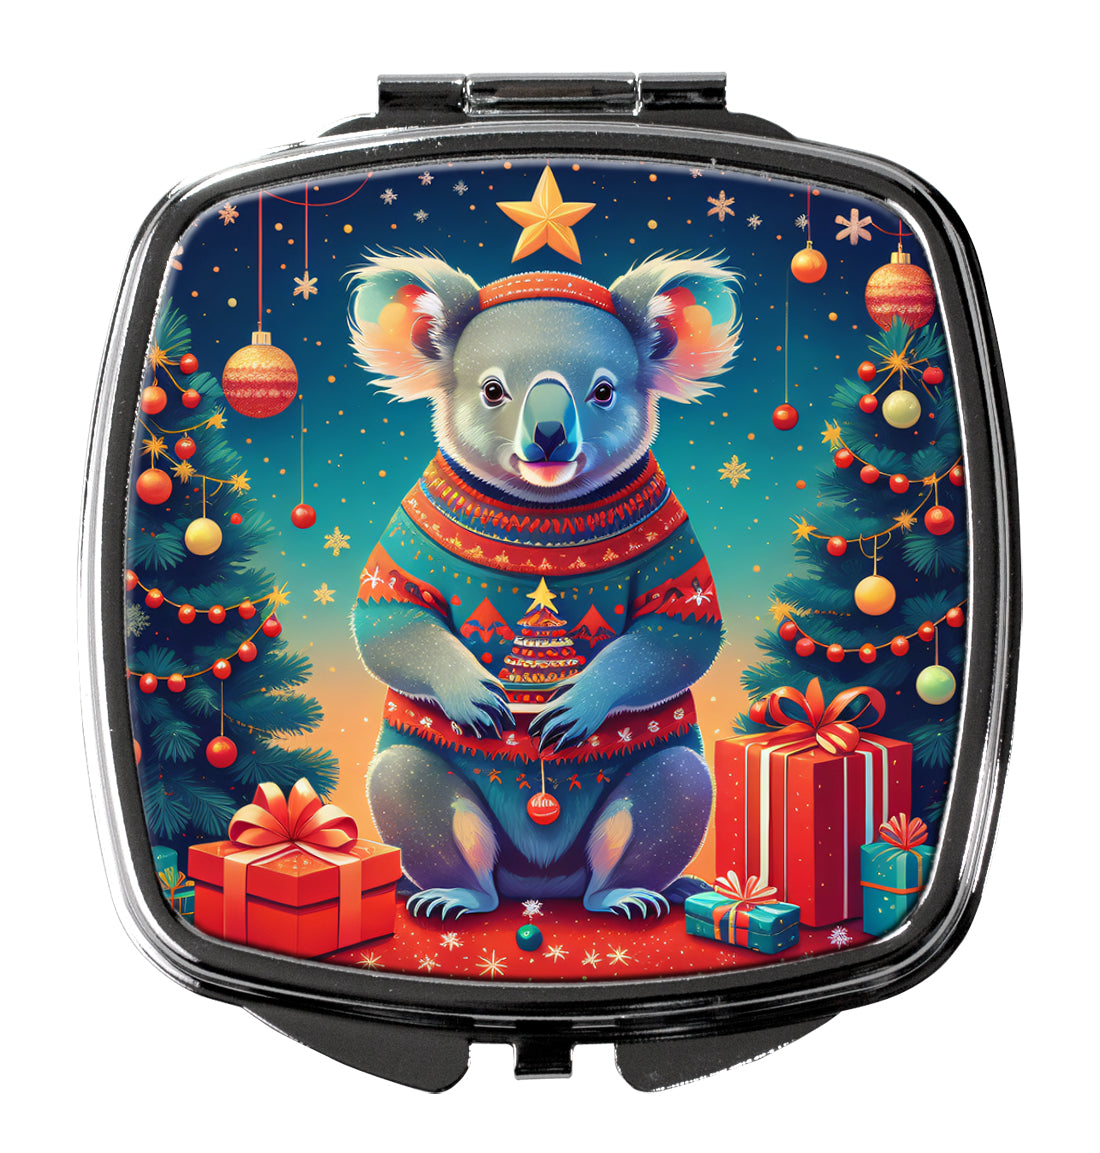 Buy this Koala Christmas Compact Mirror